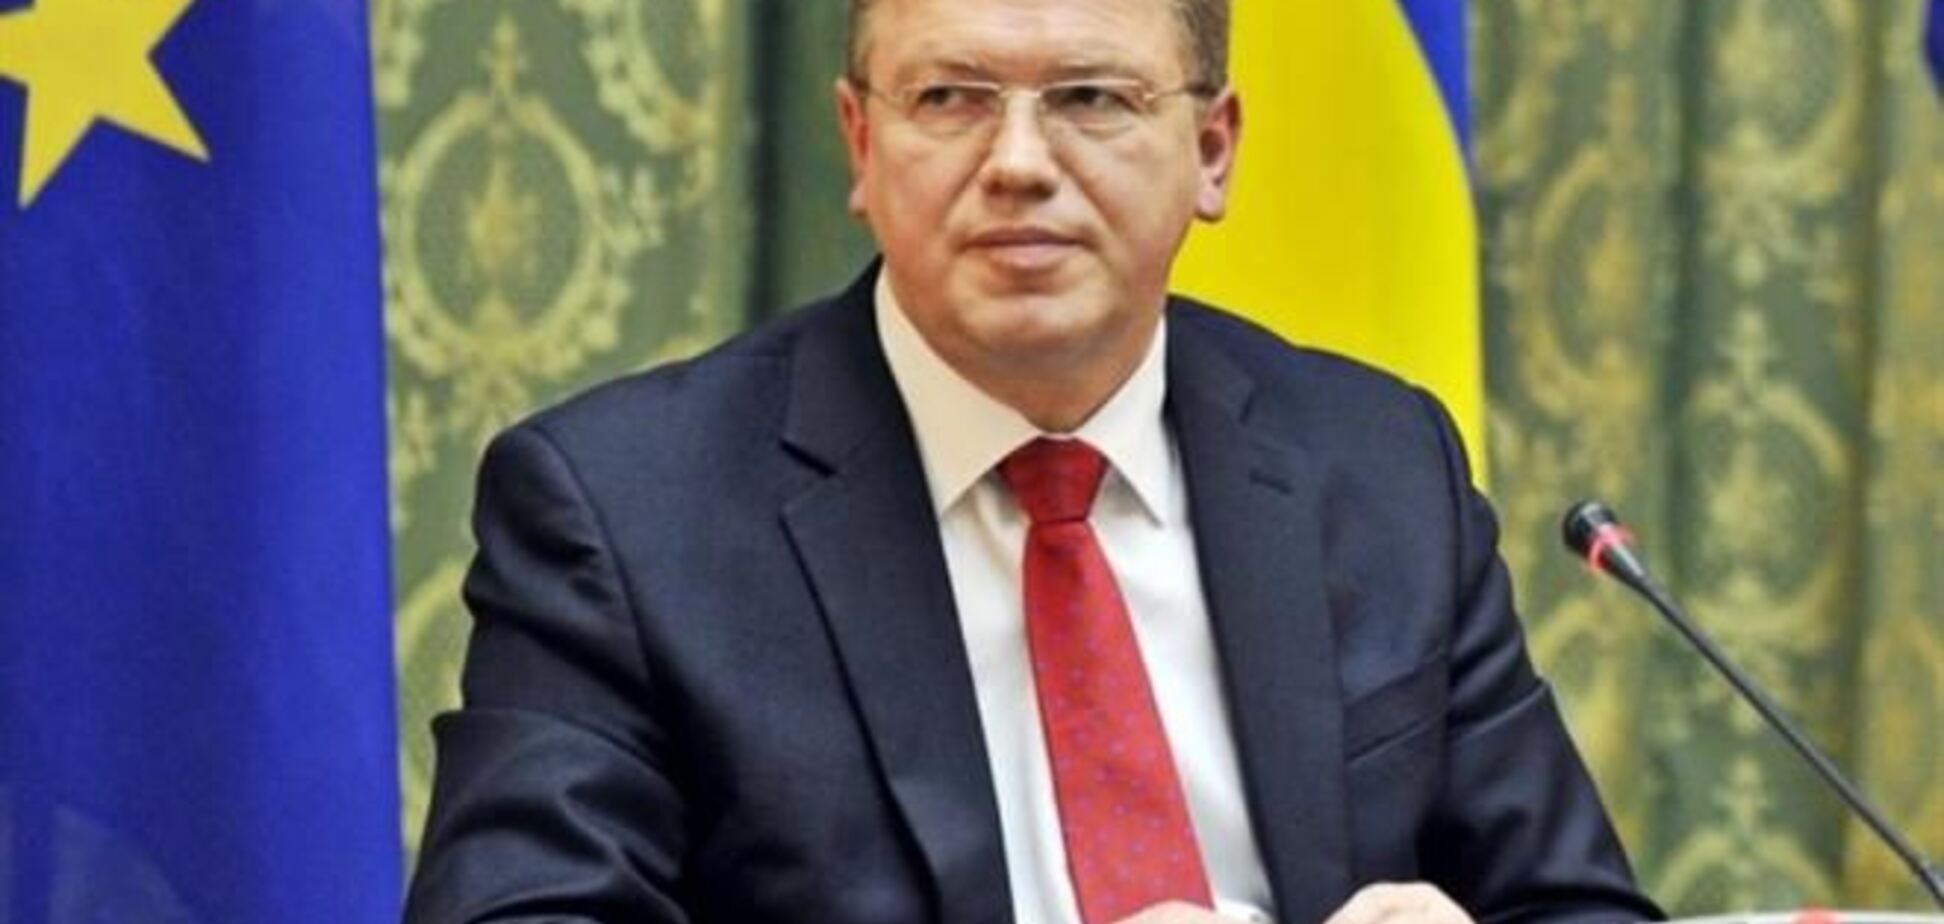 Еврокомиссар Фюле посетит Украину в пятницу